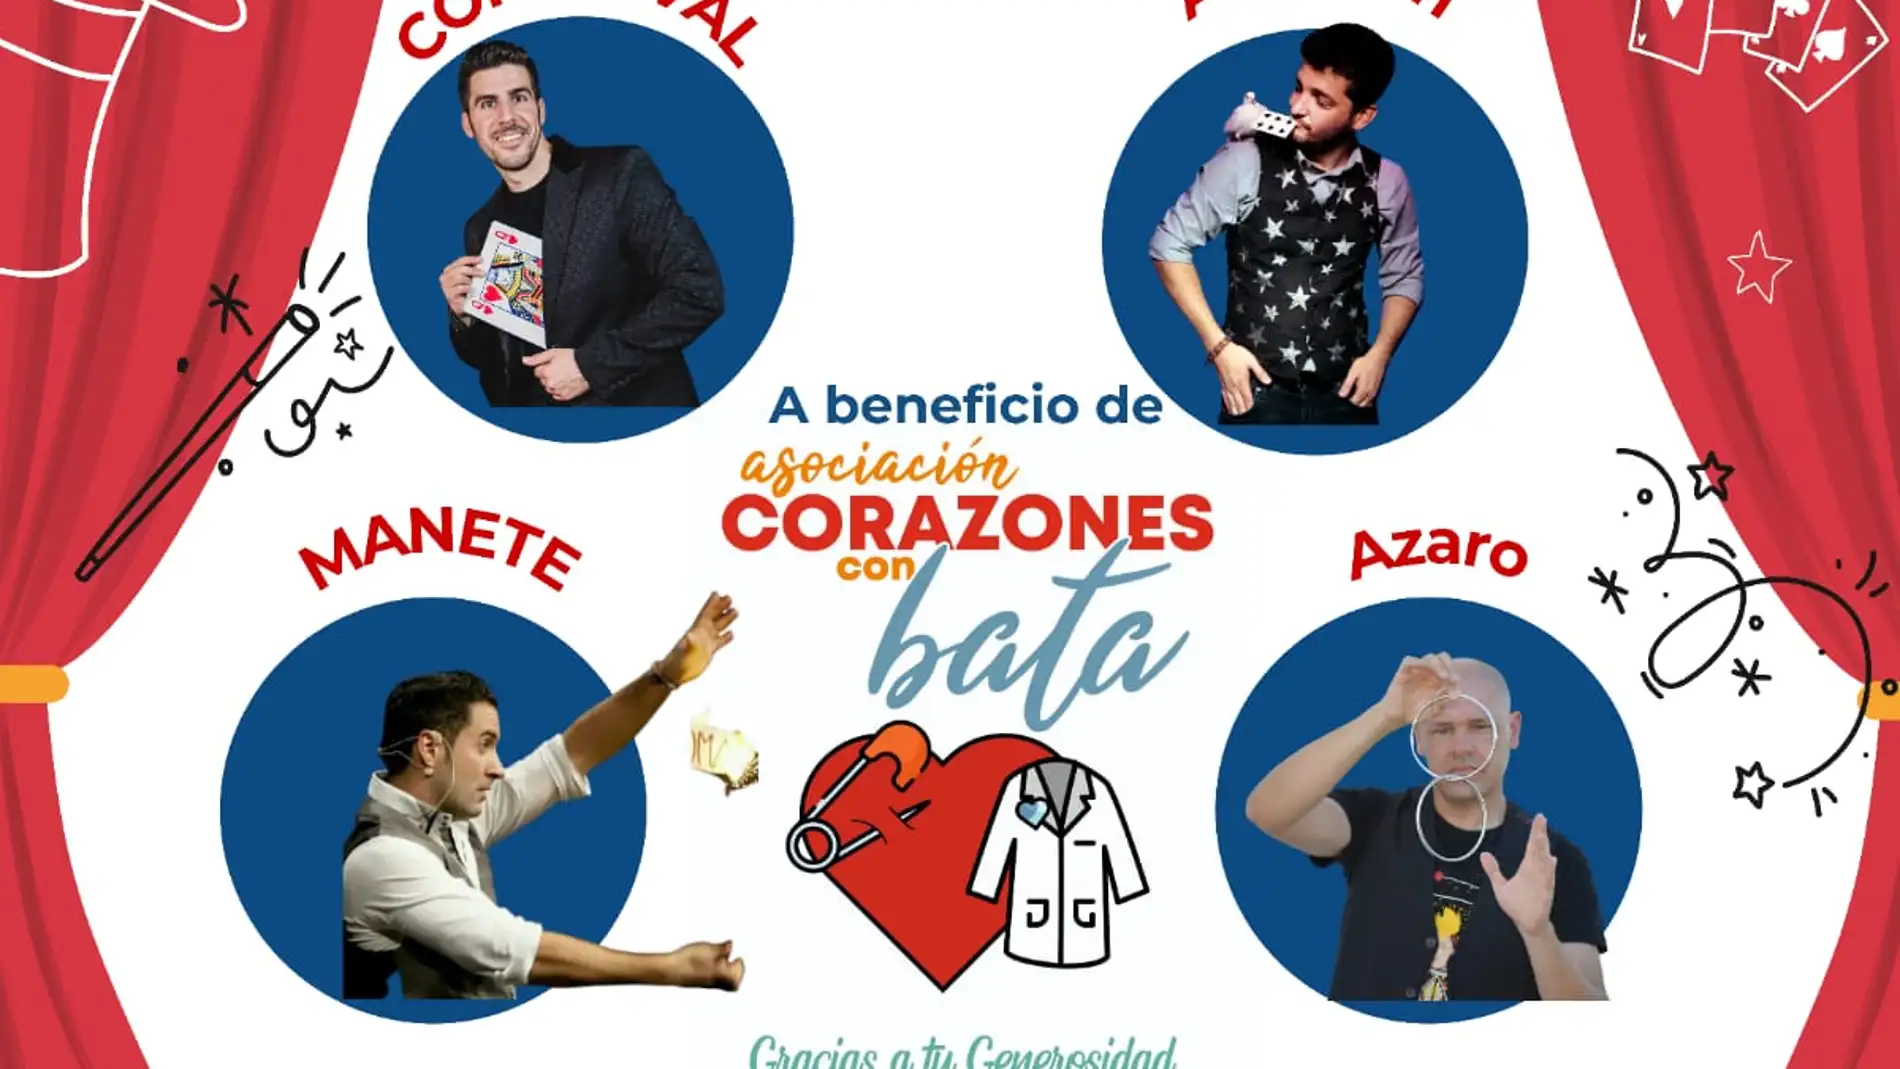 3º gala mágica solidaria a beneficio de la asociación Corazones con Bata